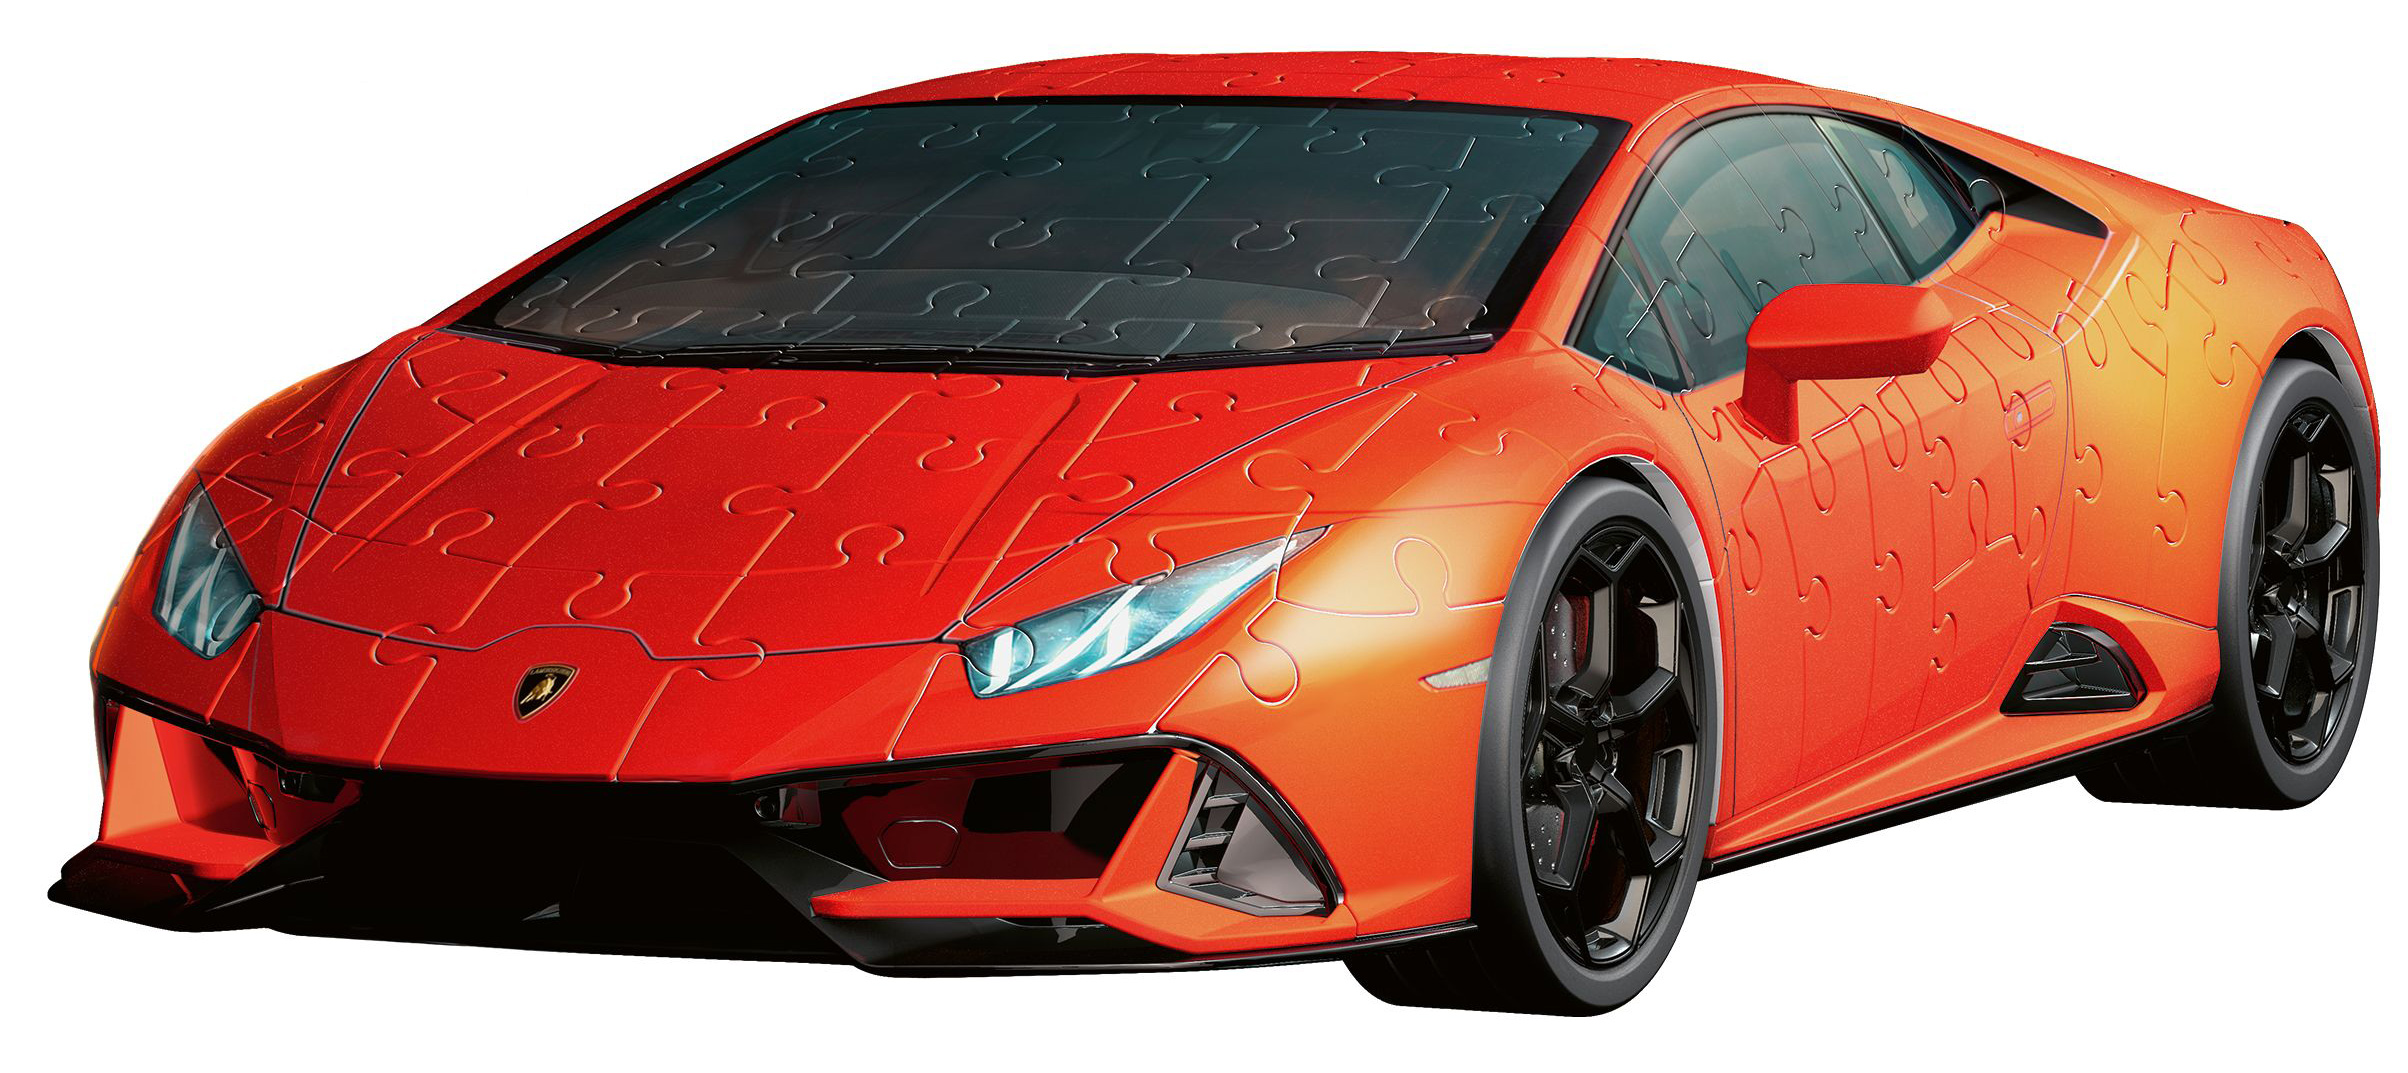 Lamborghini Huracan EVO Vehicles Shaped Puzzle